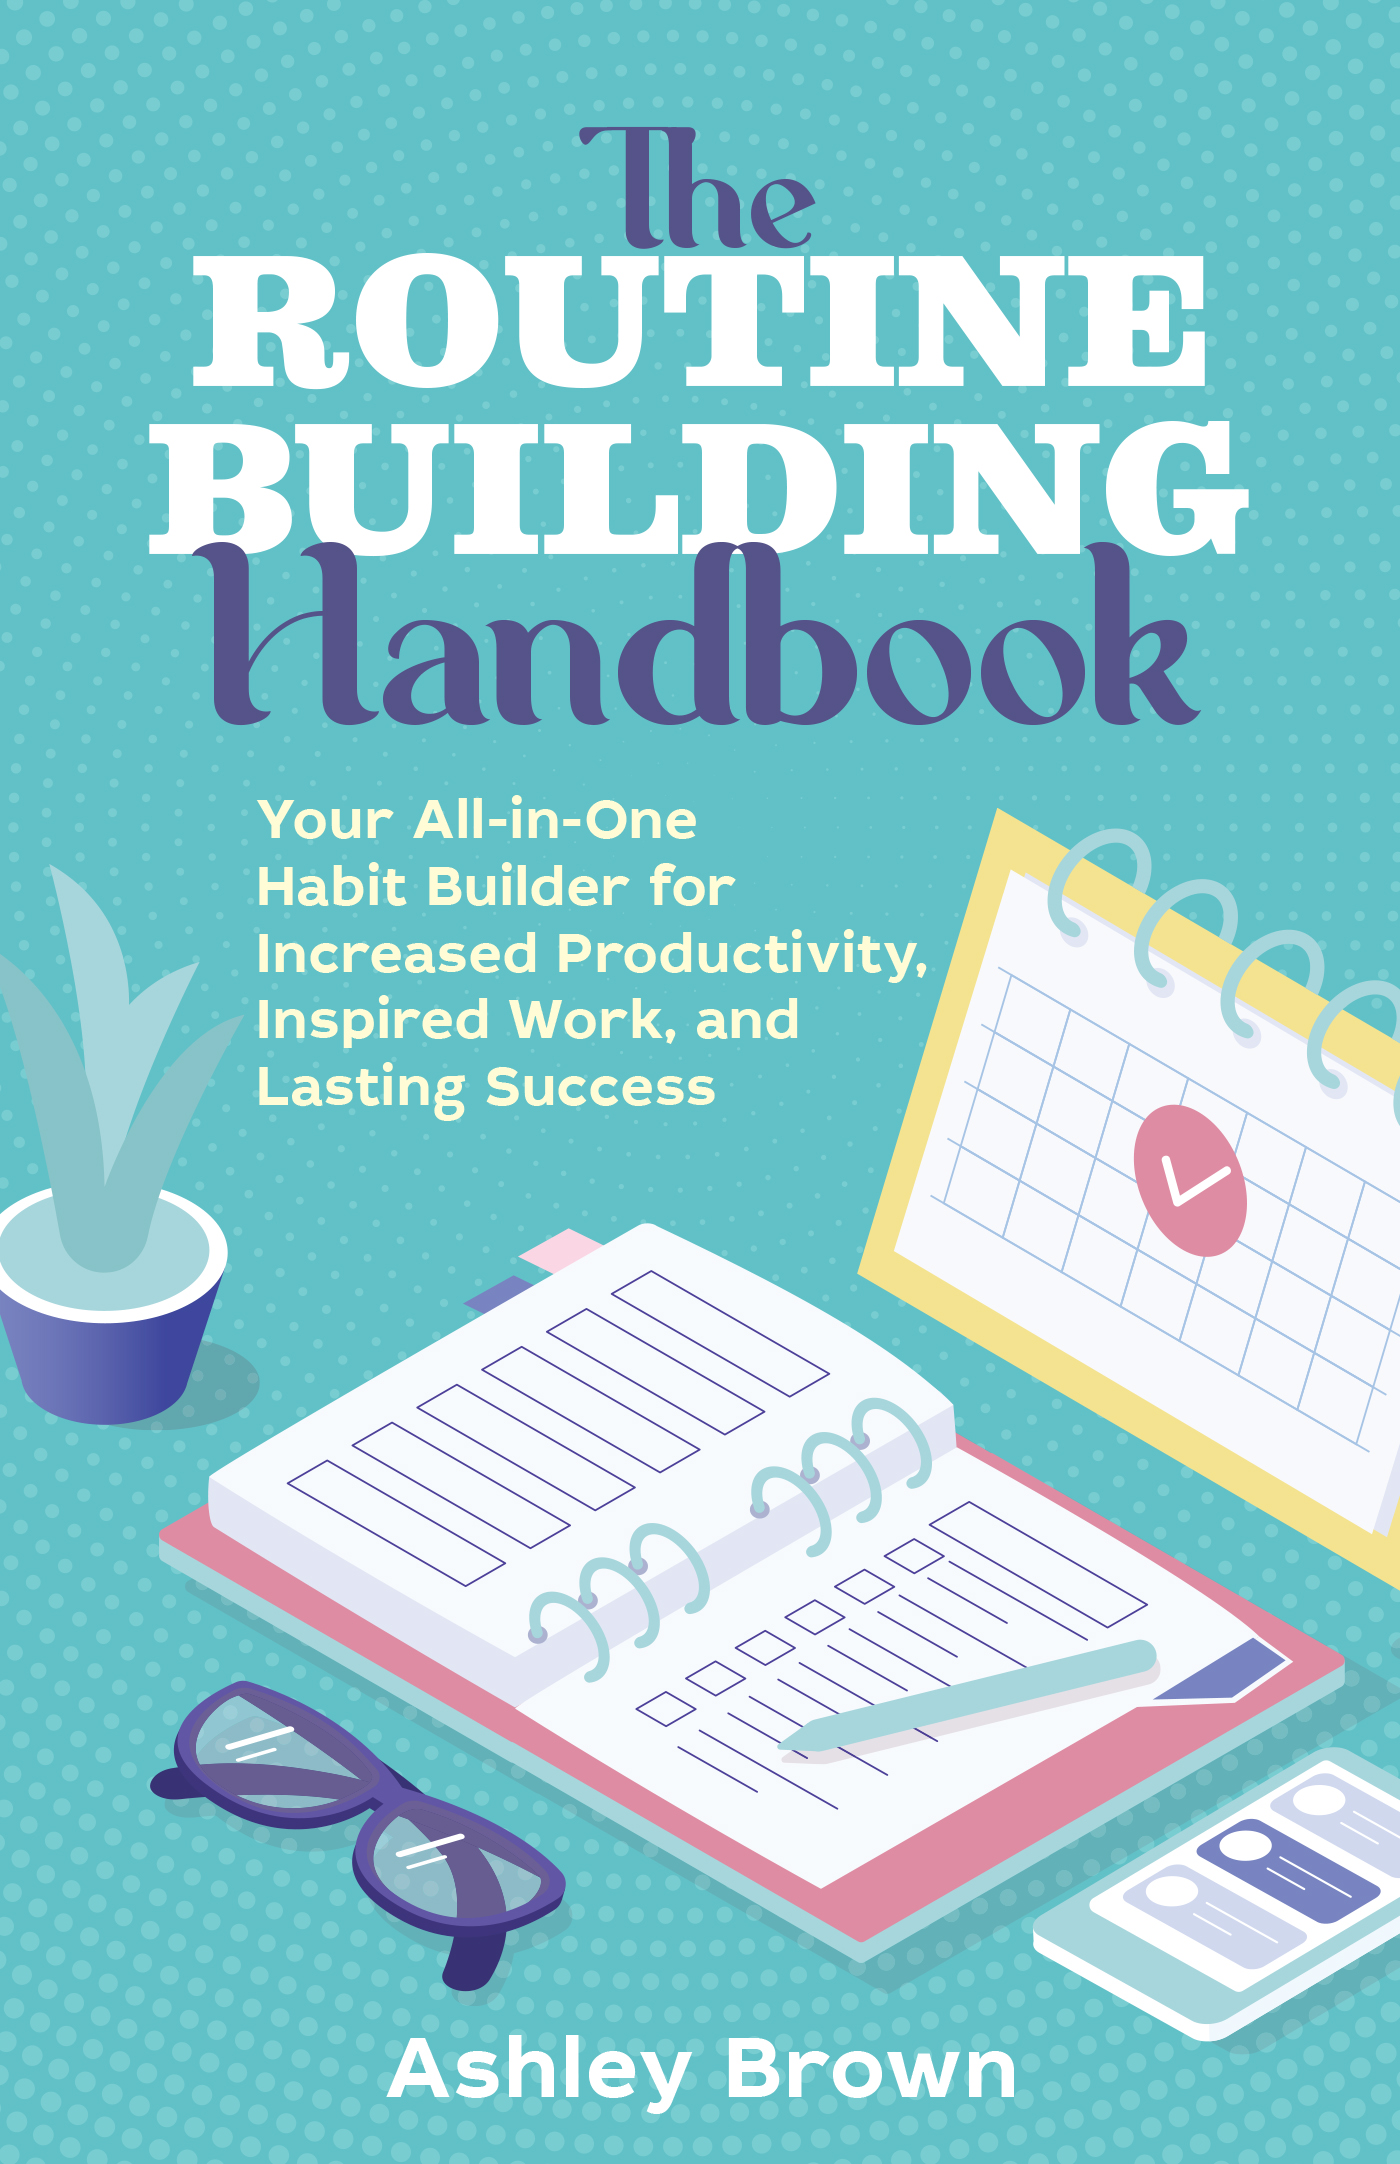 Routine Building Handbook-front.indd